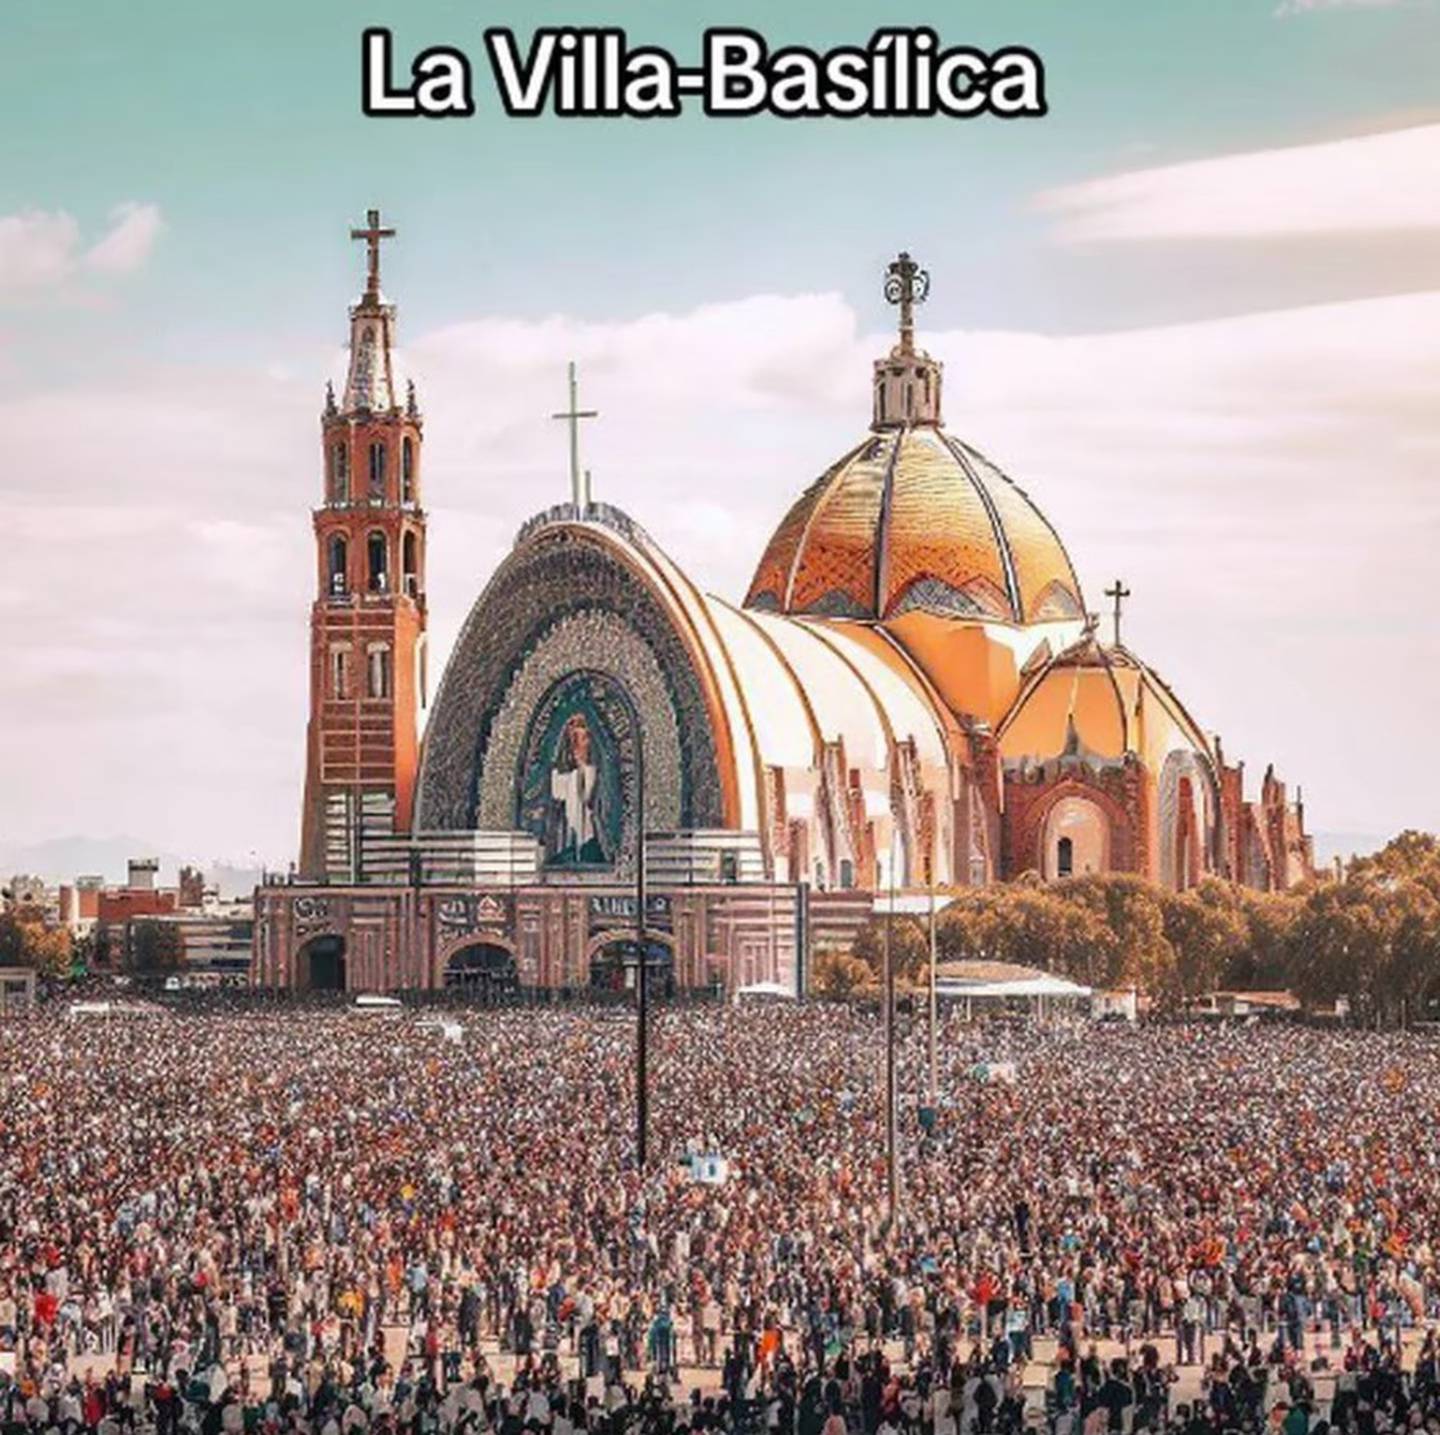 The Villa-Basilica